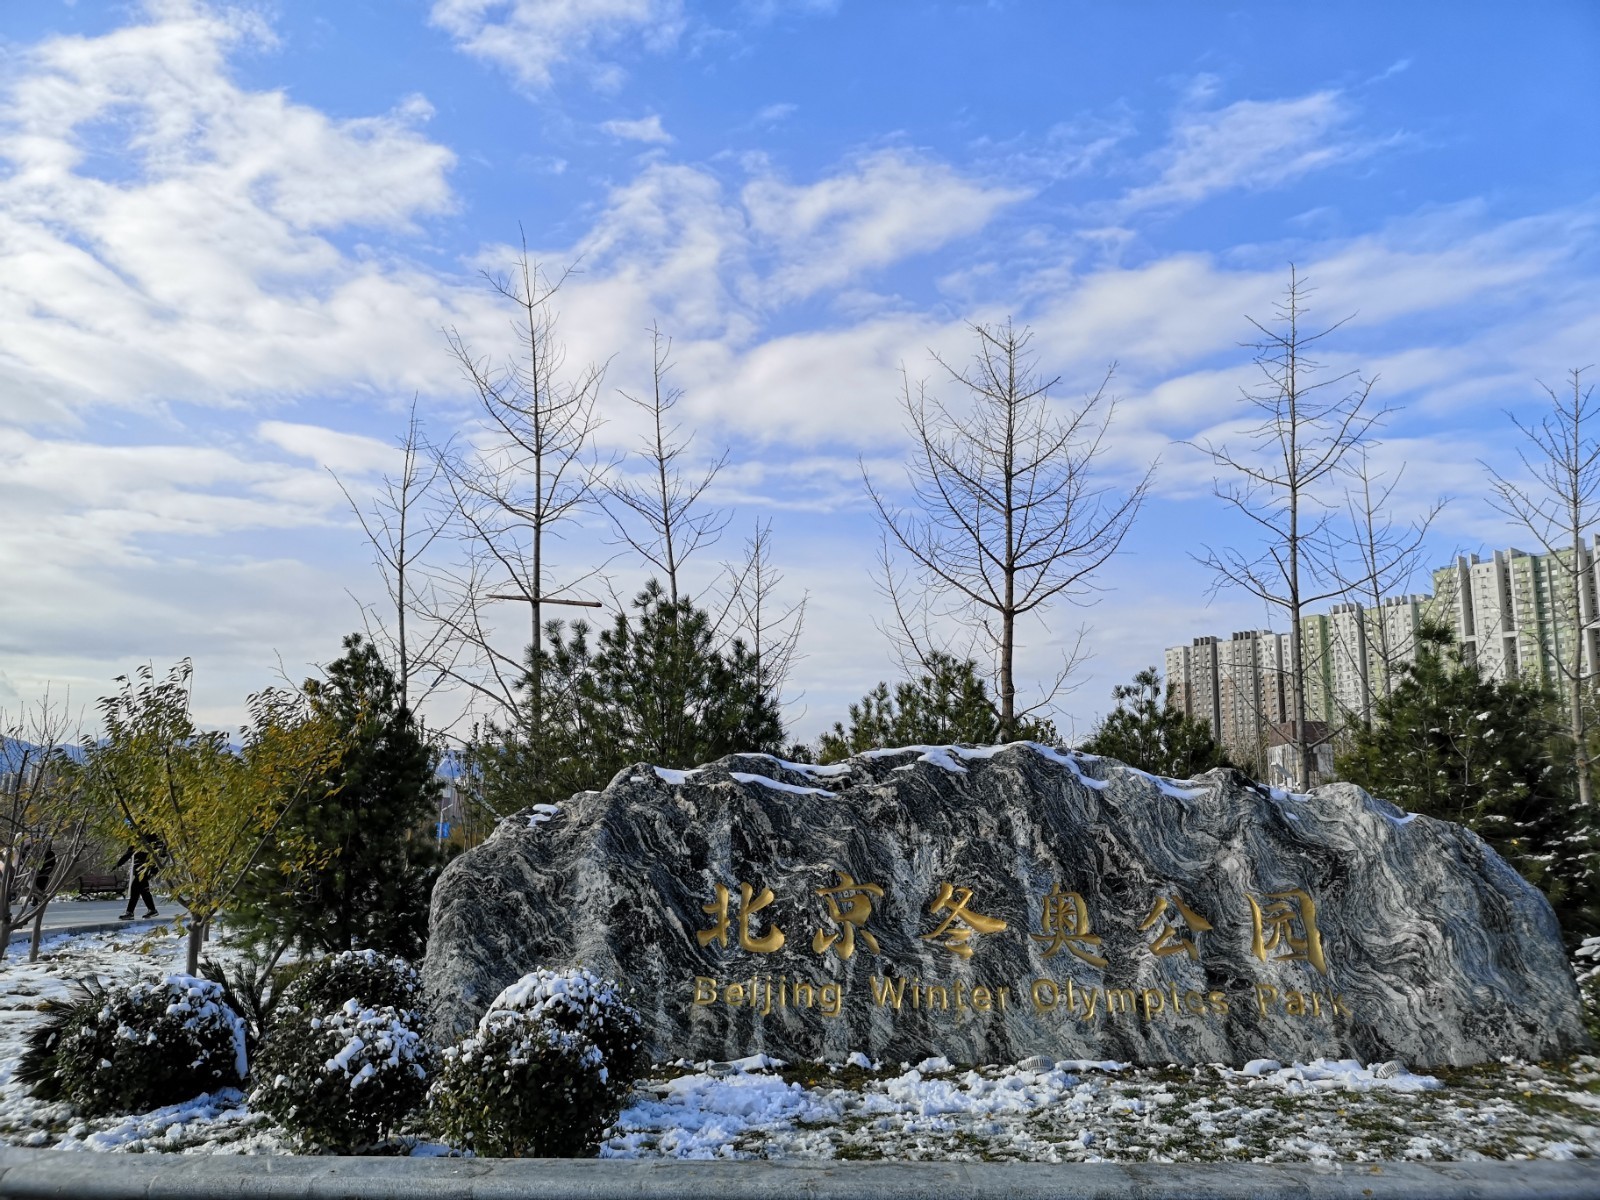 银装素裹,雪后的北京冬奥公园冬奥氛围瞬间拉满!